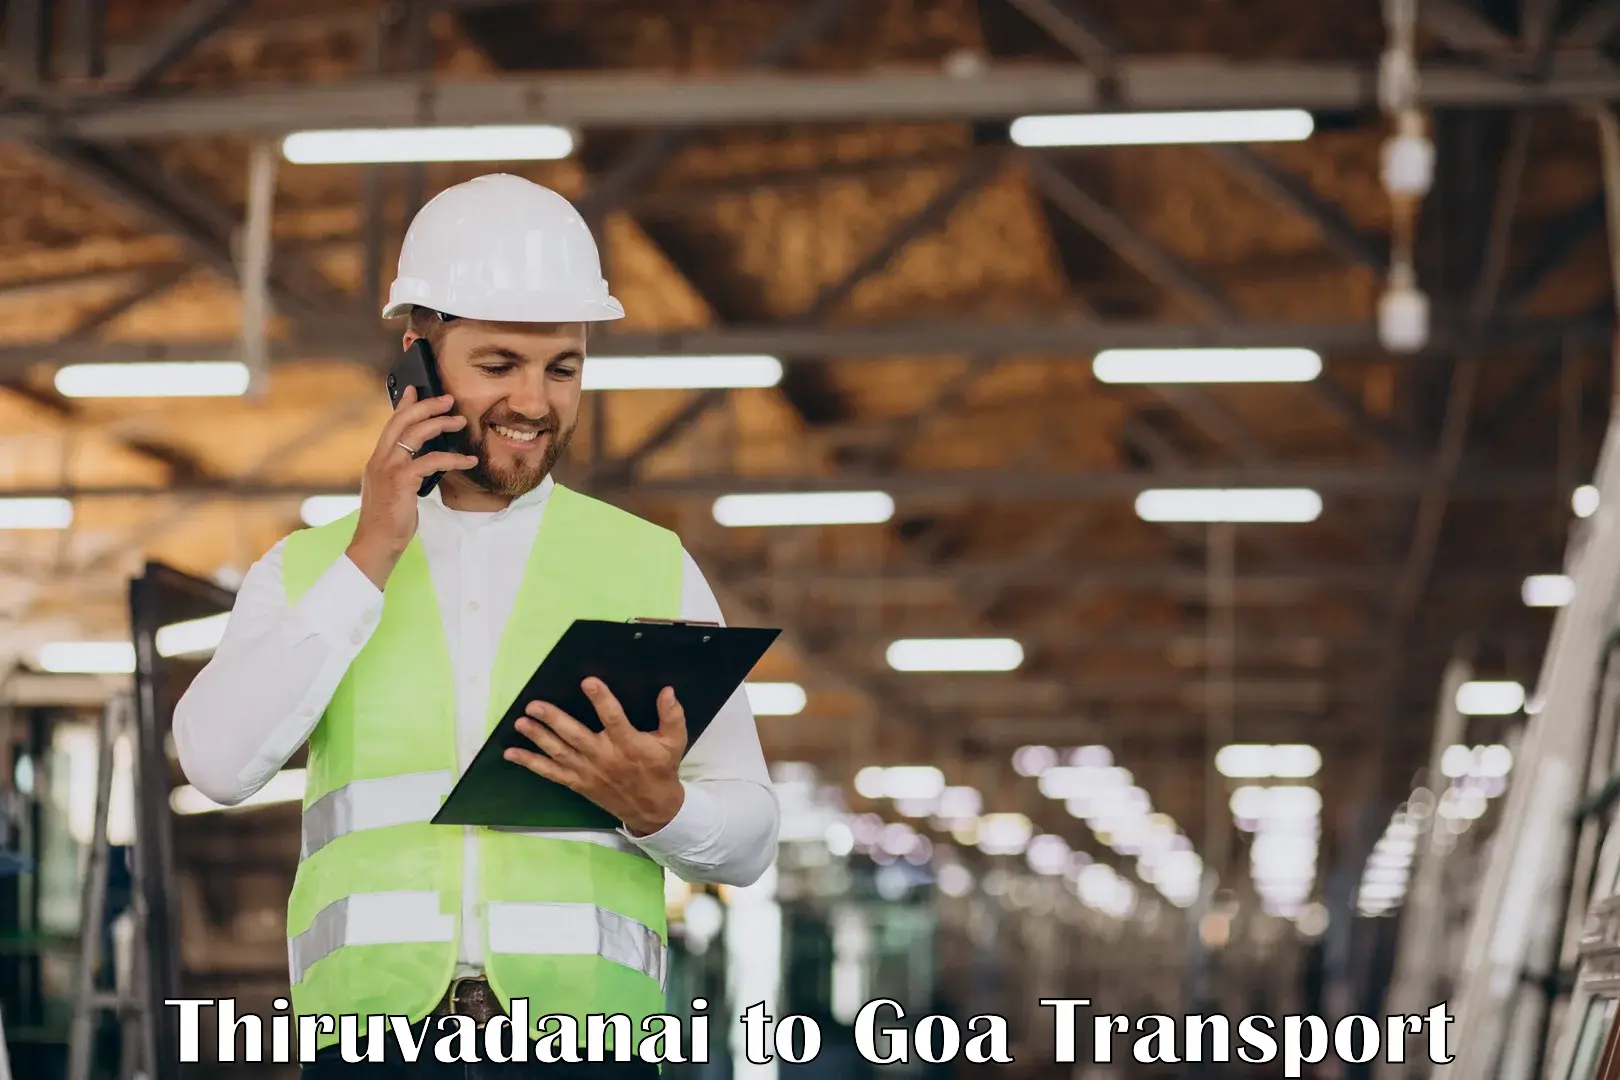 Goods delivery service Thiruvadanai to Goa